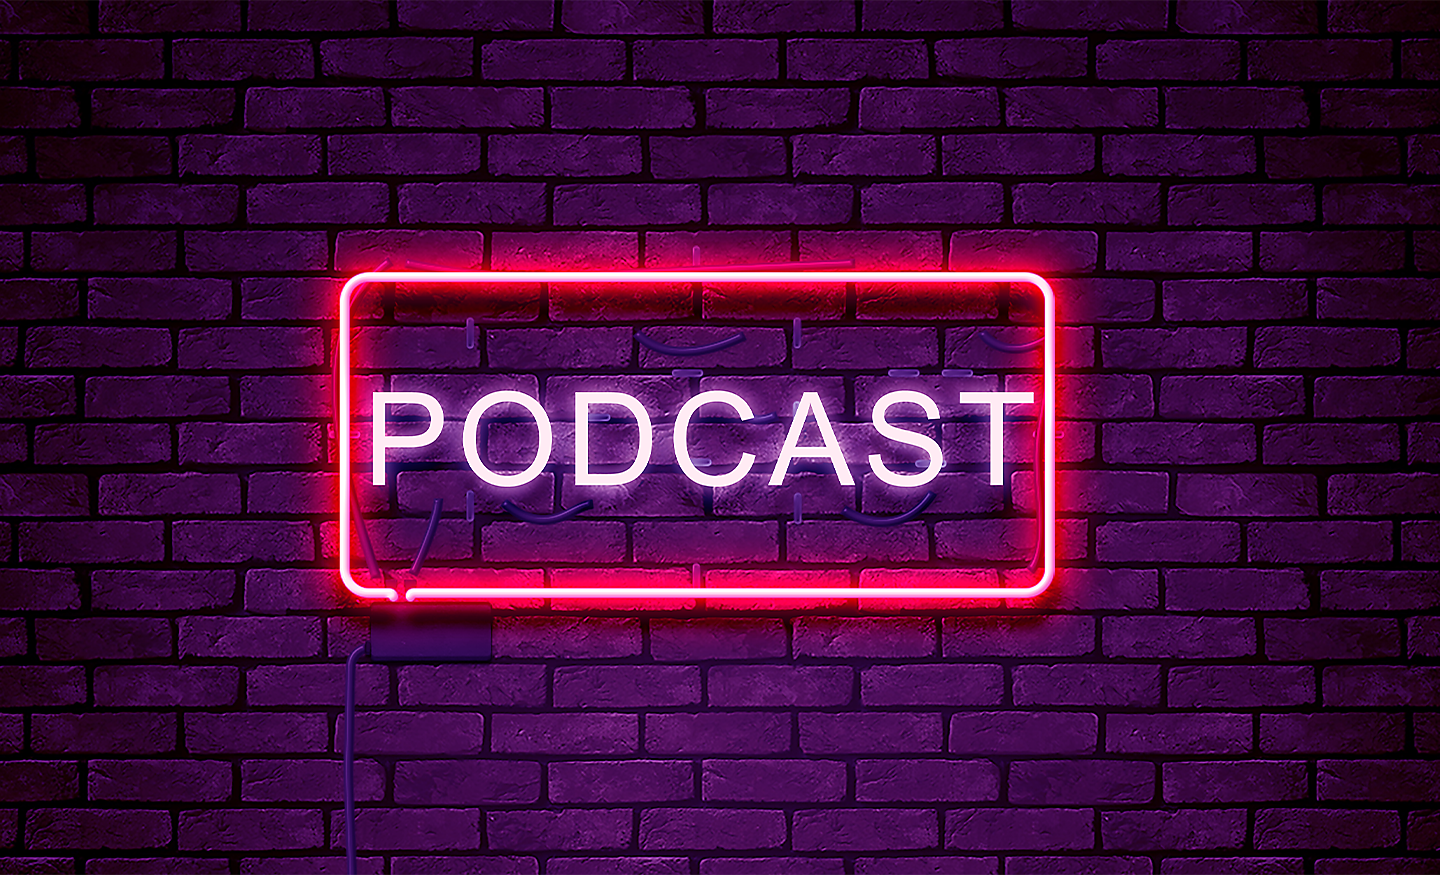 Slovo Podcast obklopené červeným neónovým svetlom, ktoré je namontované na tehlovej stene